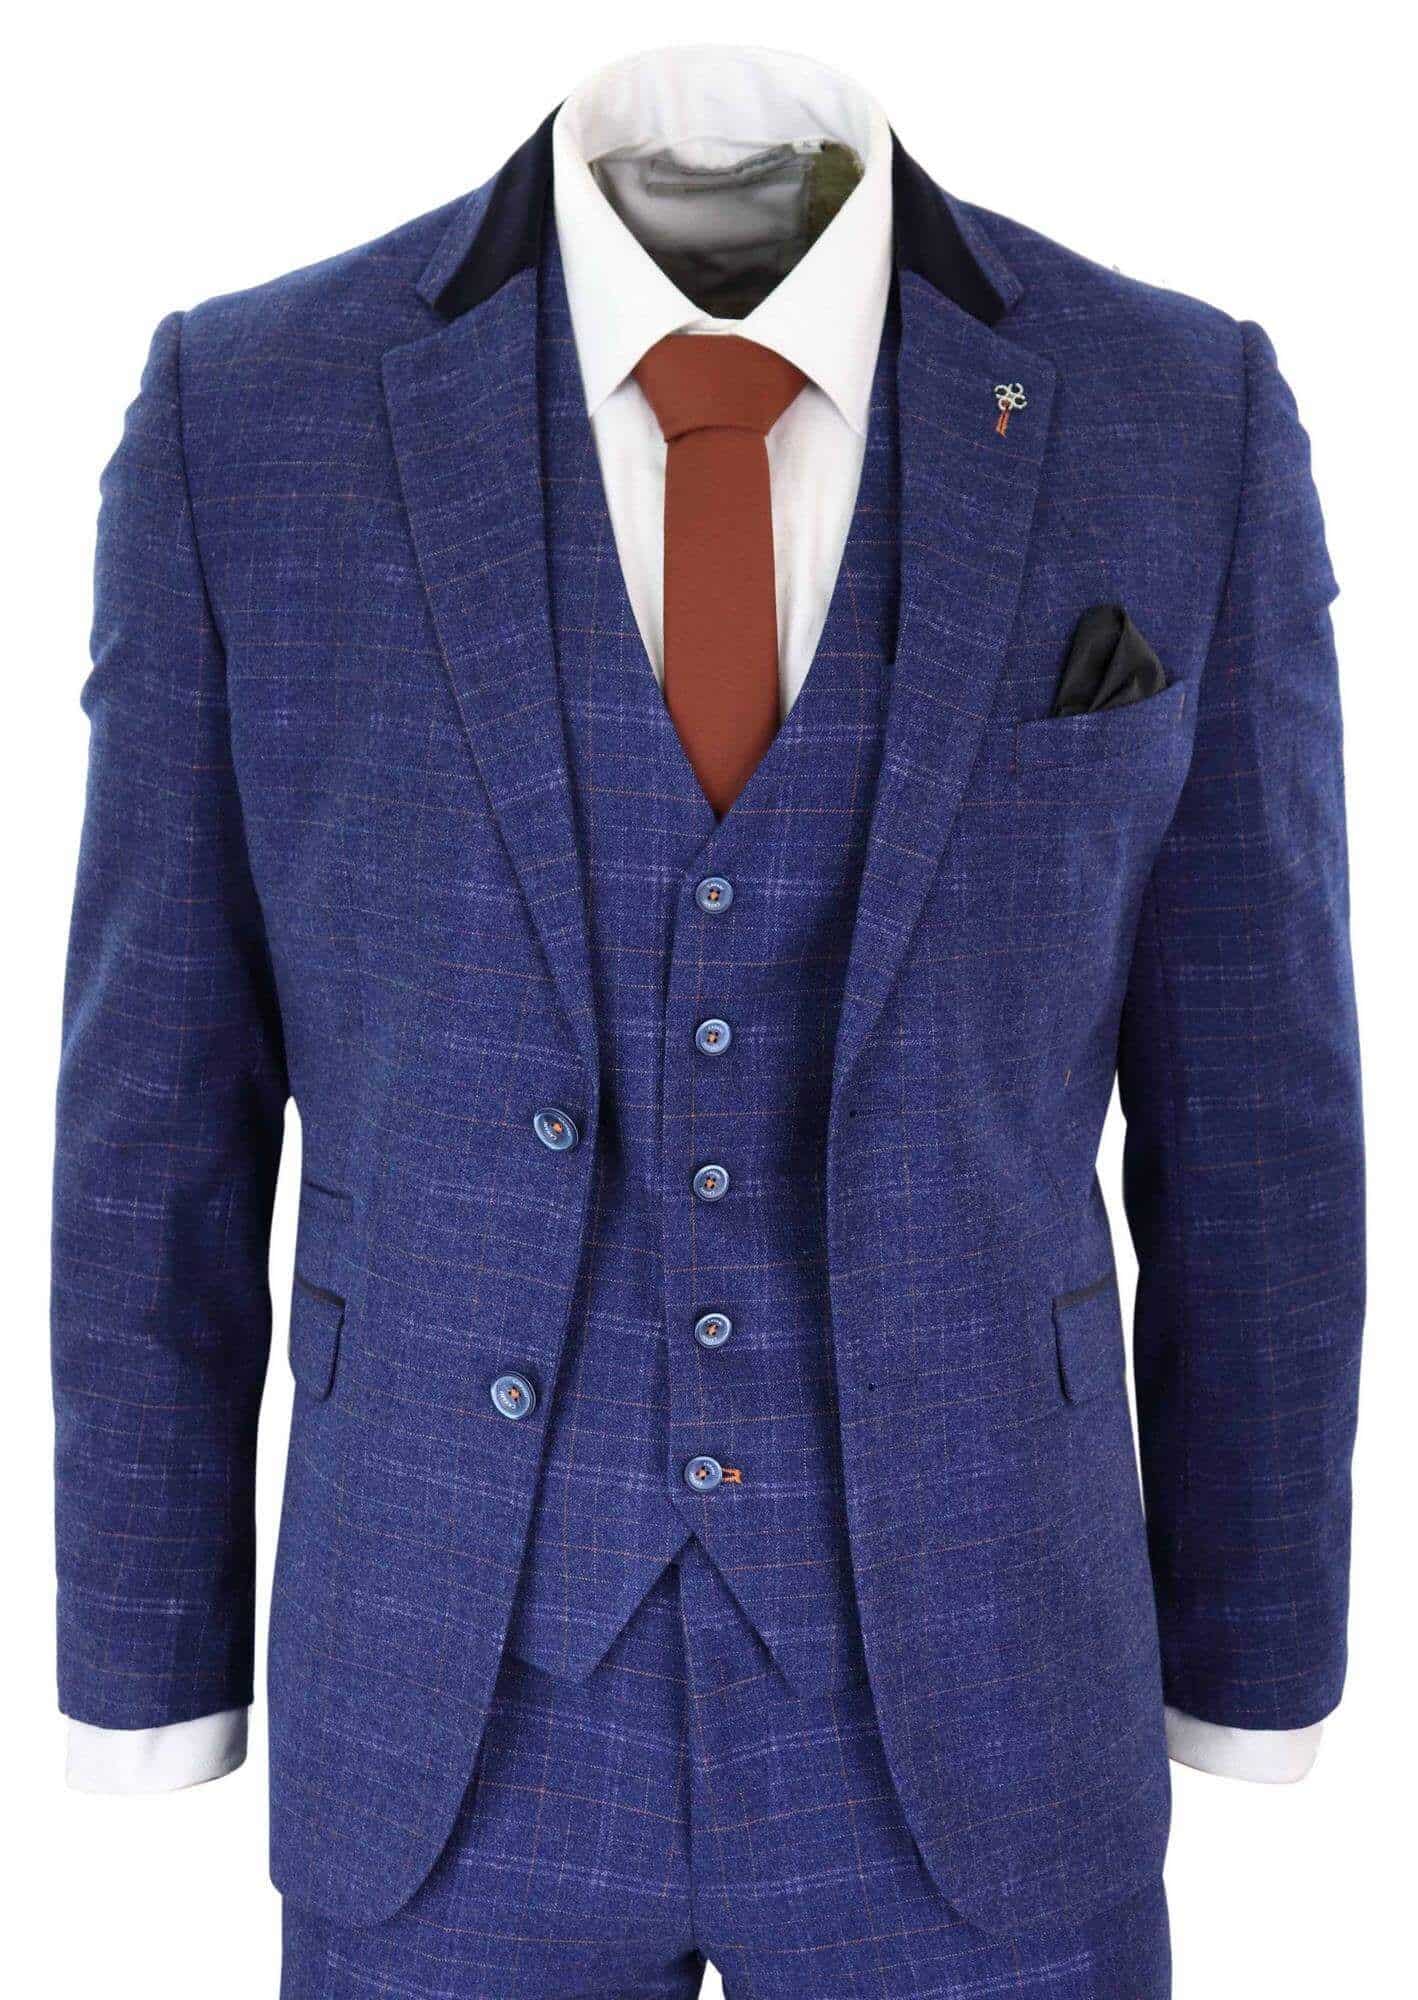 Cavani Kaiser - Men's Blue Tweed Check Suit: Buy Online - Happy Gentleman